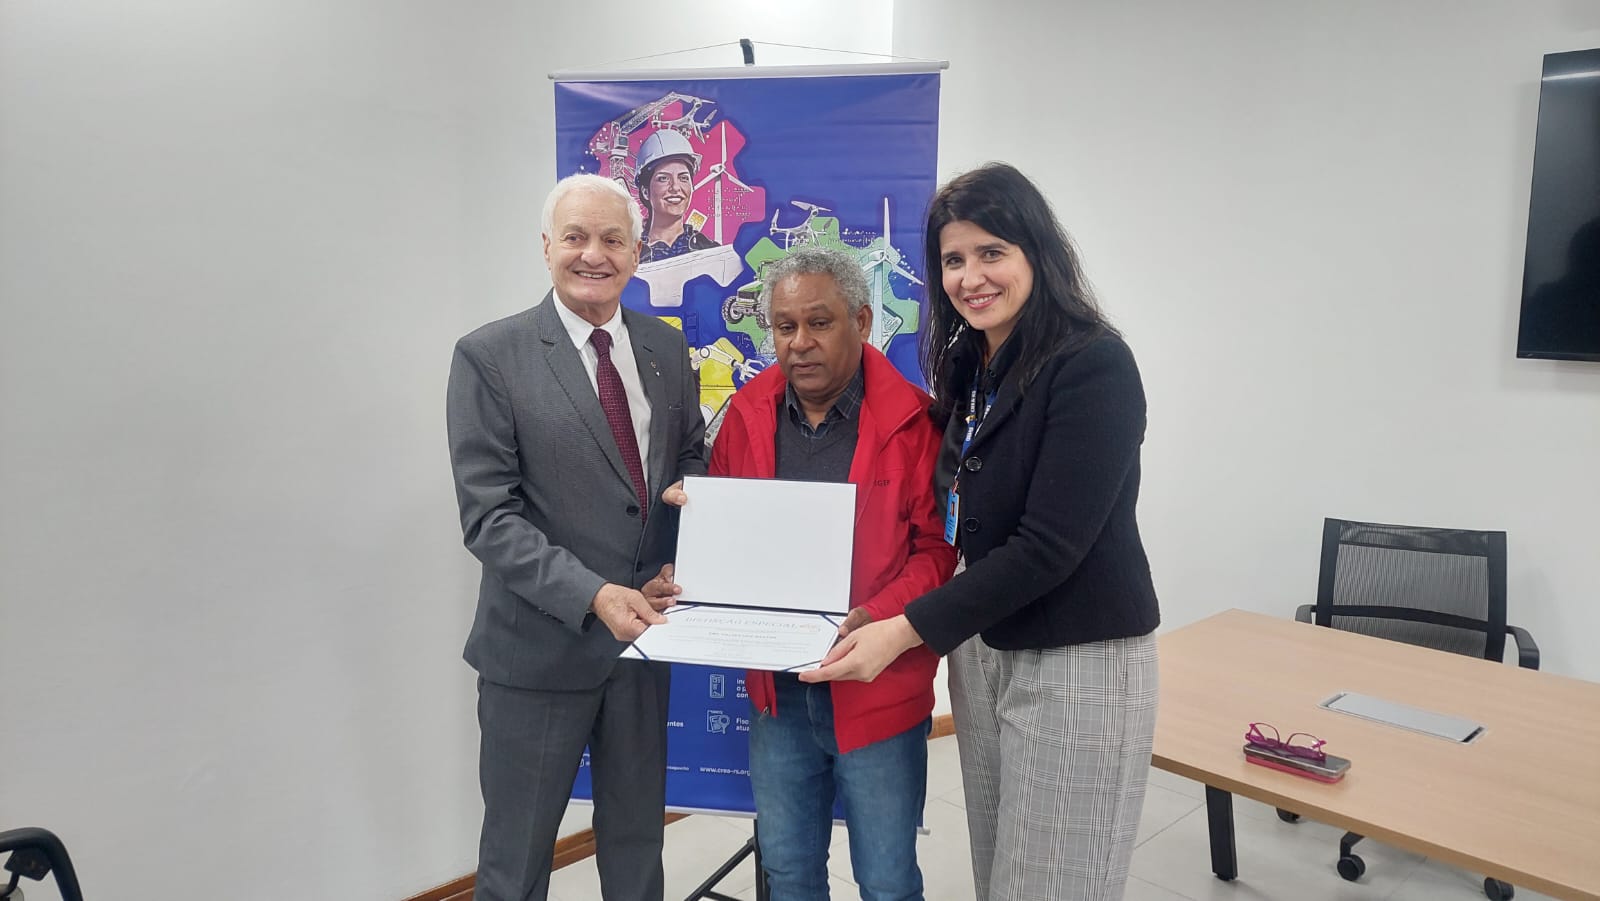 O Engenheiro Eletricista Valter Luiz Martins recebeu uma distinção pelos serviços prestados à frente da Inspetoria de Alegrete